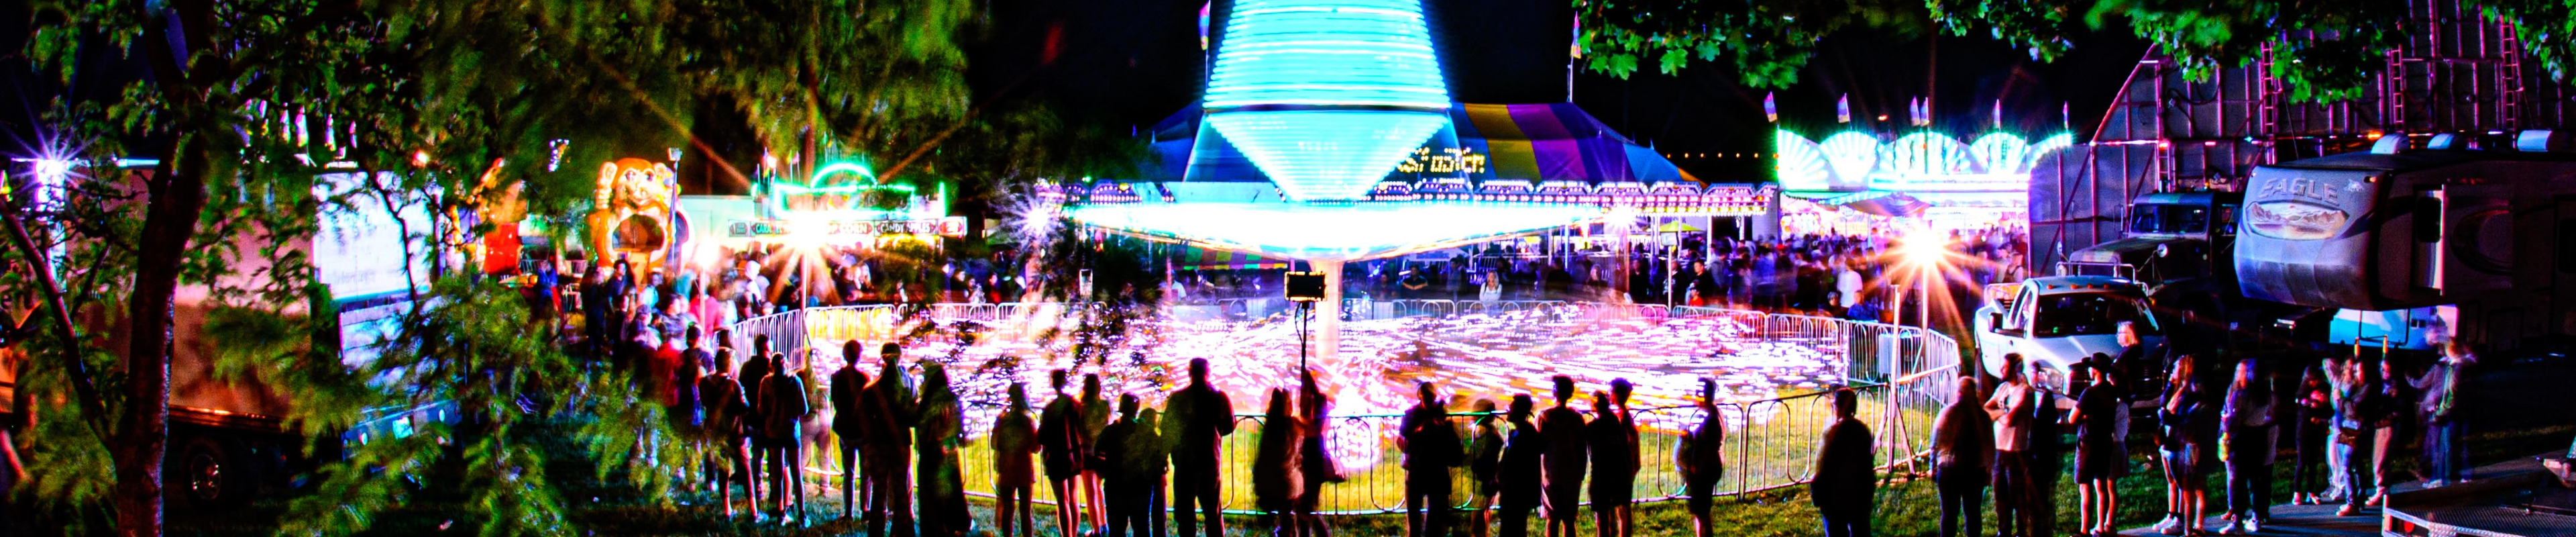 image of carnival rides at night